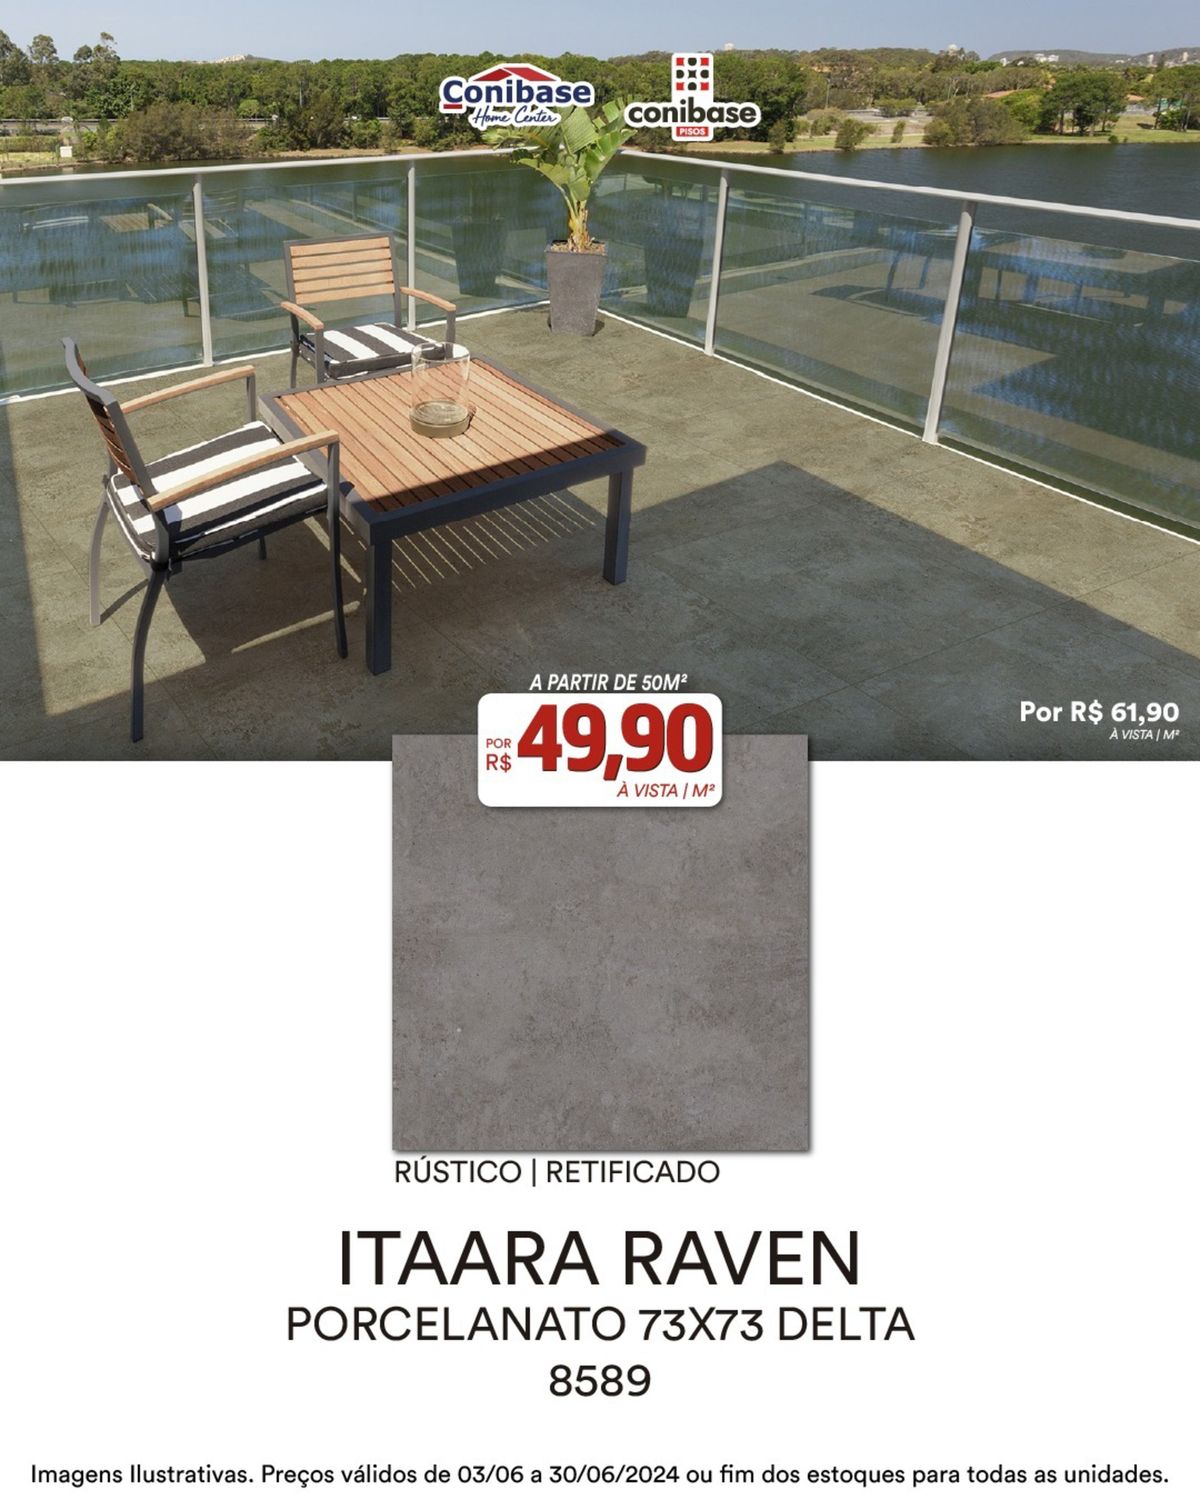 Porcelanato Itaara Raven - R$61,90 por caixa de 4m²